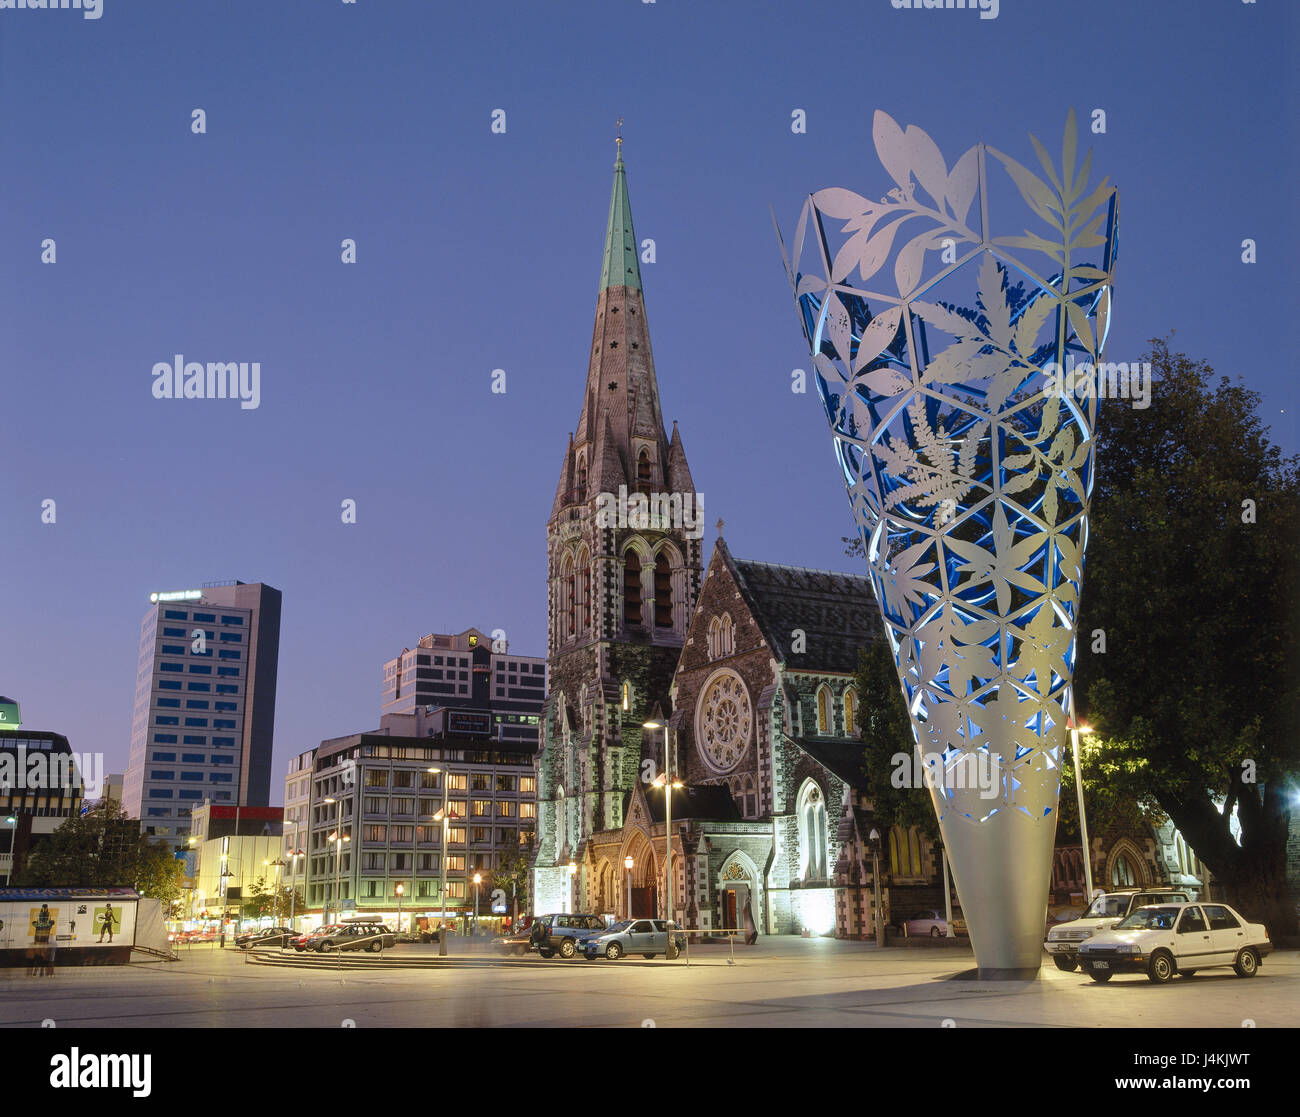 Nouvelle Zélande, île du sud, Christchurch, la cathédrale, la sculpture, l'éclairage, l'île de nuit, la Nouvelle-Zélande, la place de la cathédrale, l'église, l'église, de la construction, de l'architecture sacrée, point d'intérêt, paysage urbain Banque D'Images